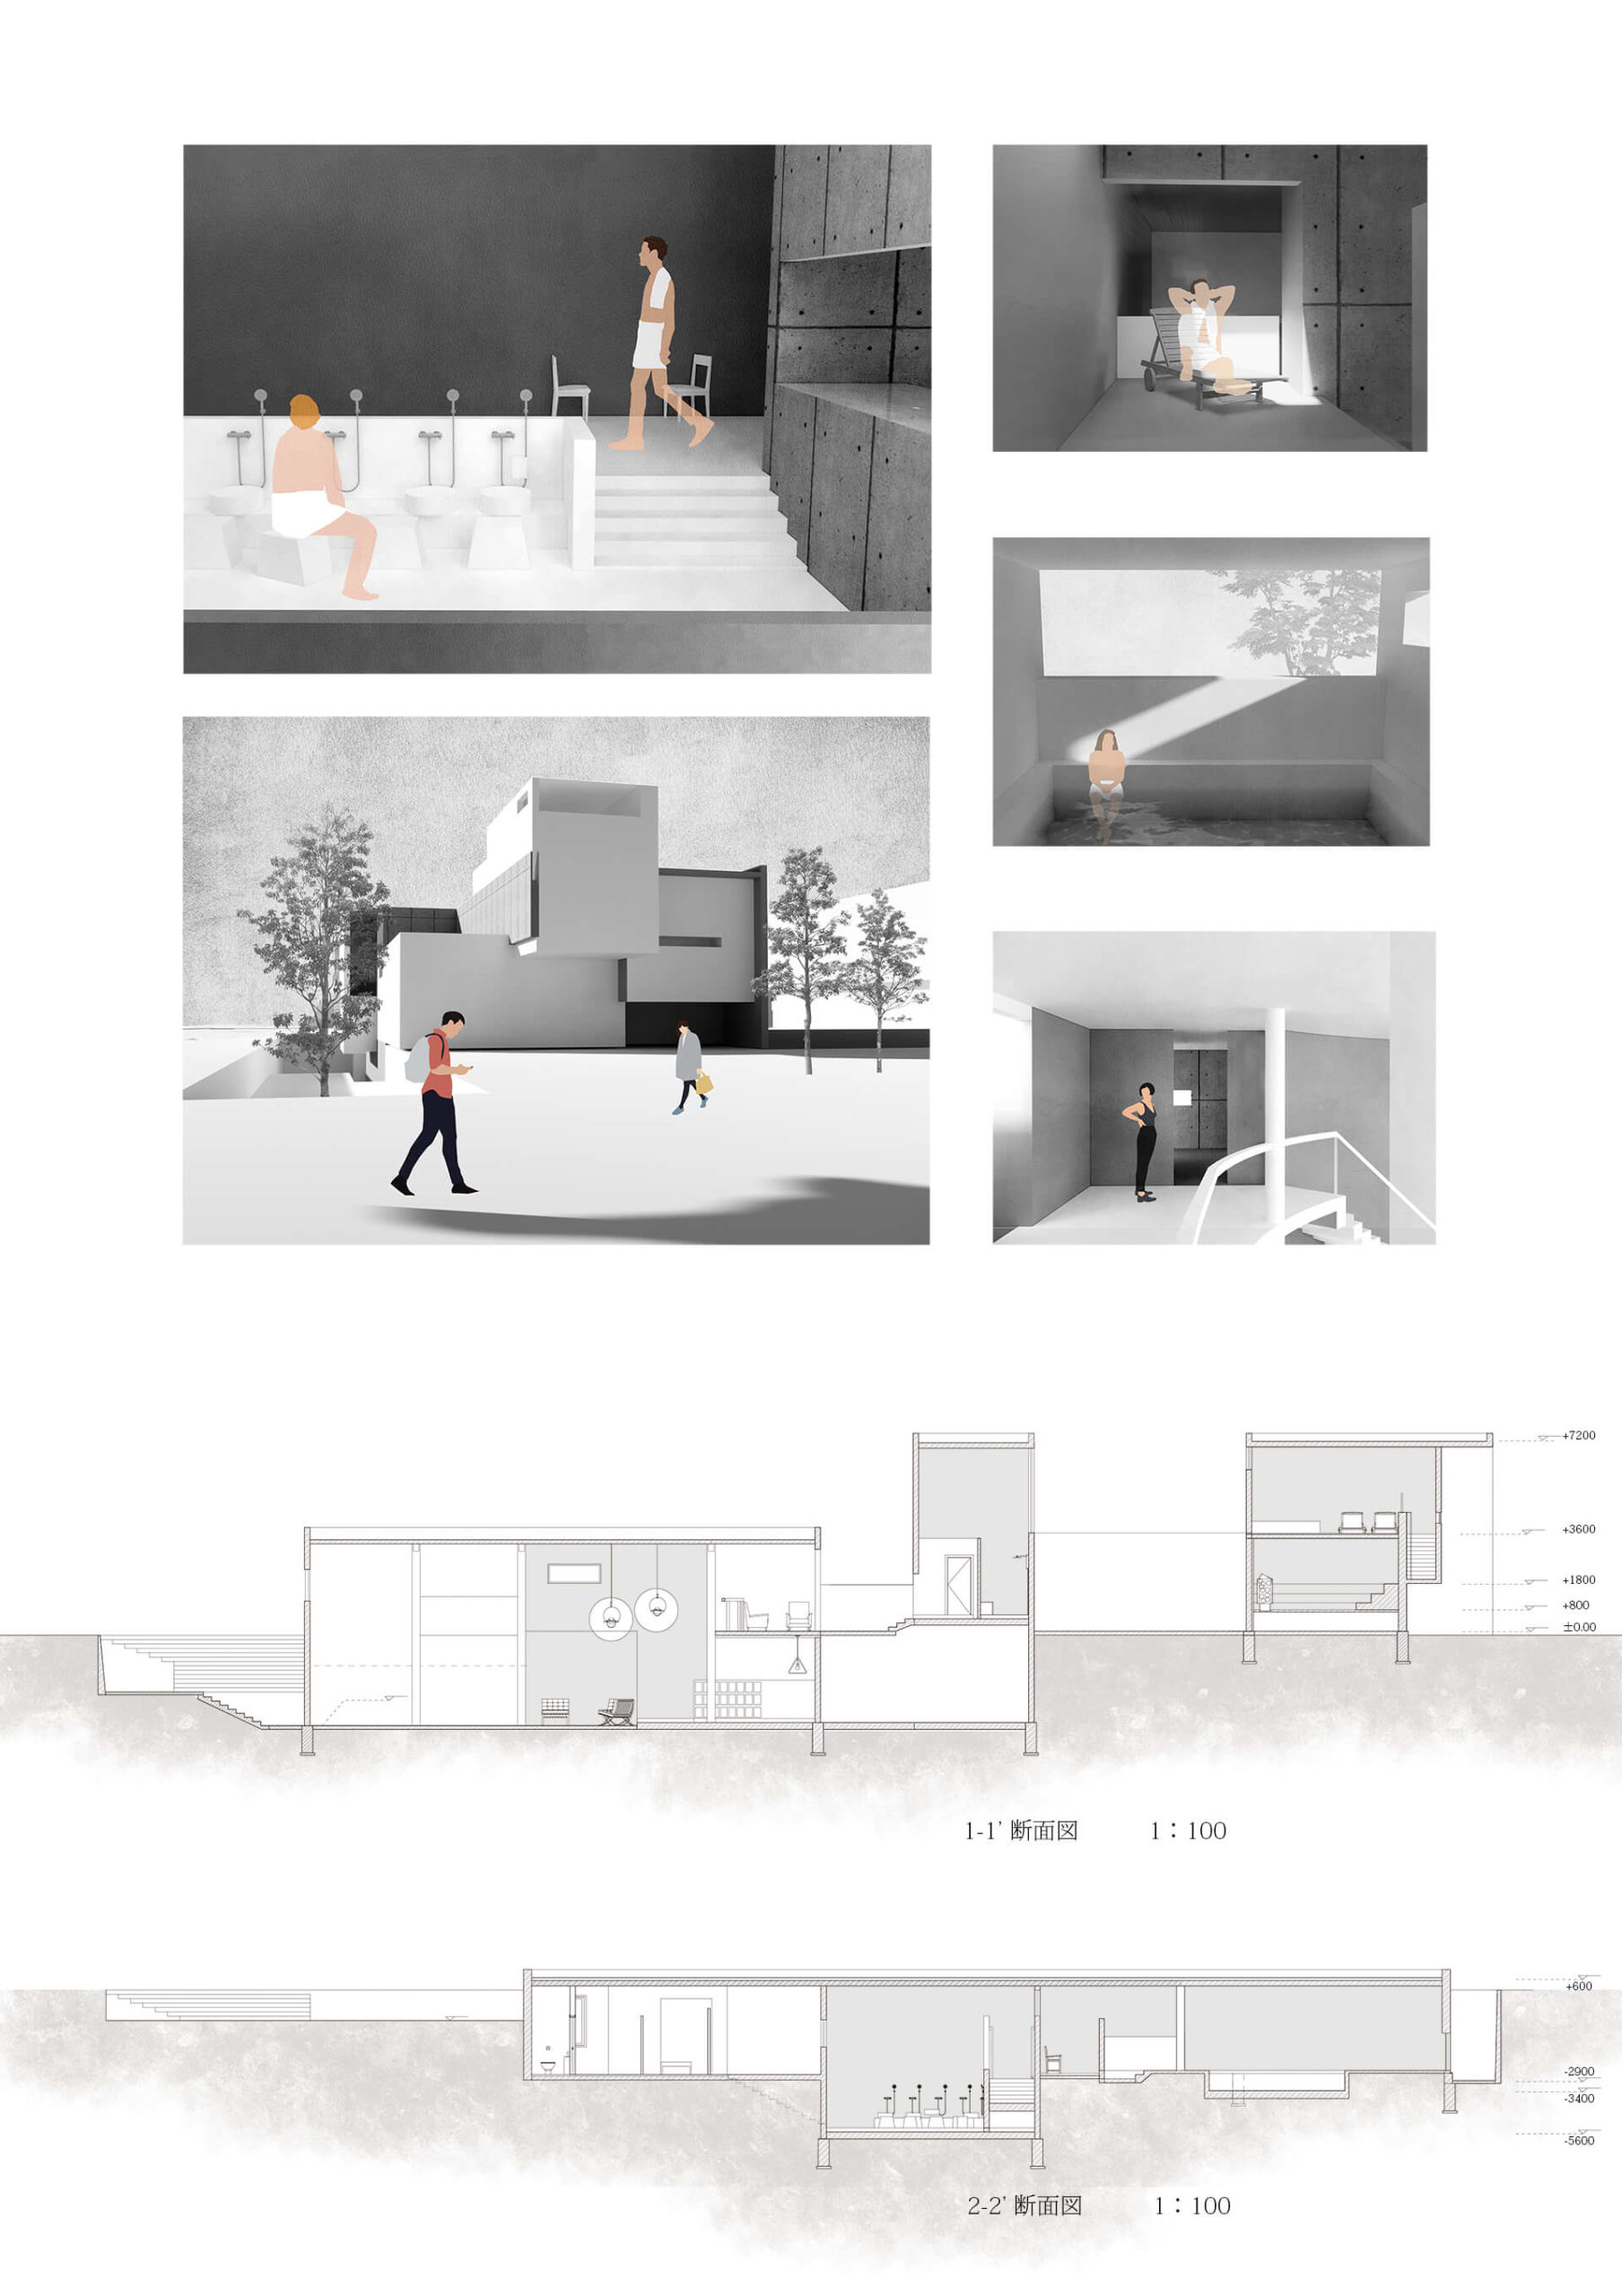 孤独を包摂する公共空間の提案 ー槇文彦の作品におけるひとり空間の考察を通してー-8